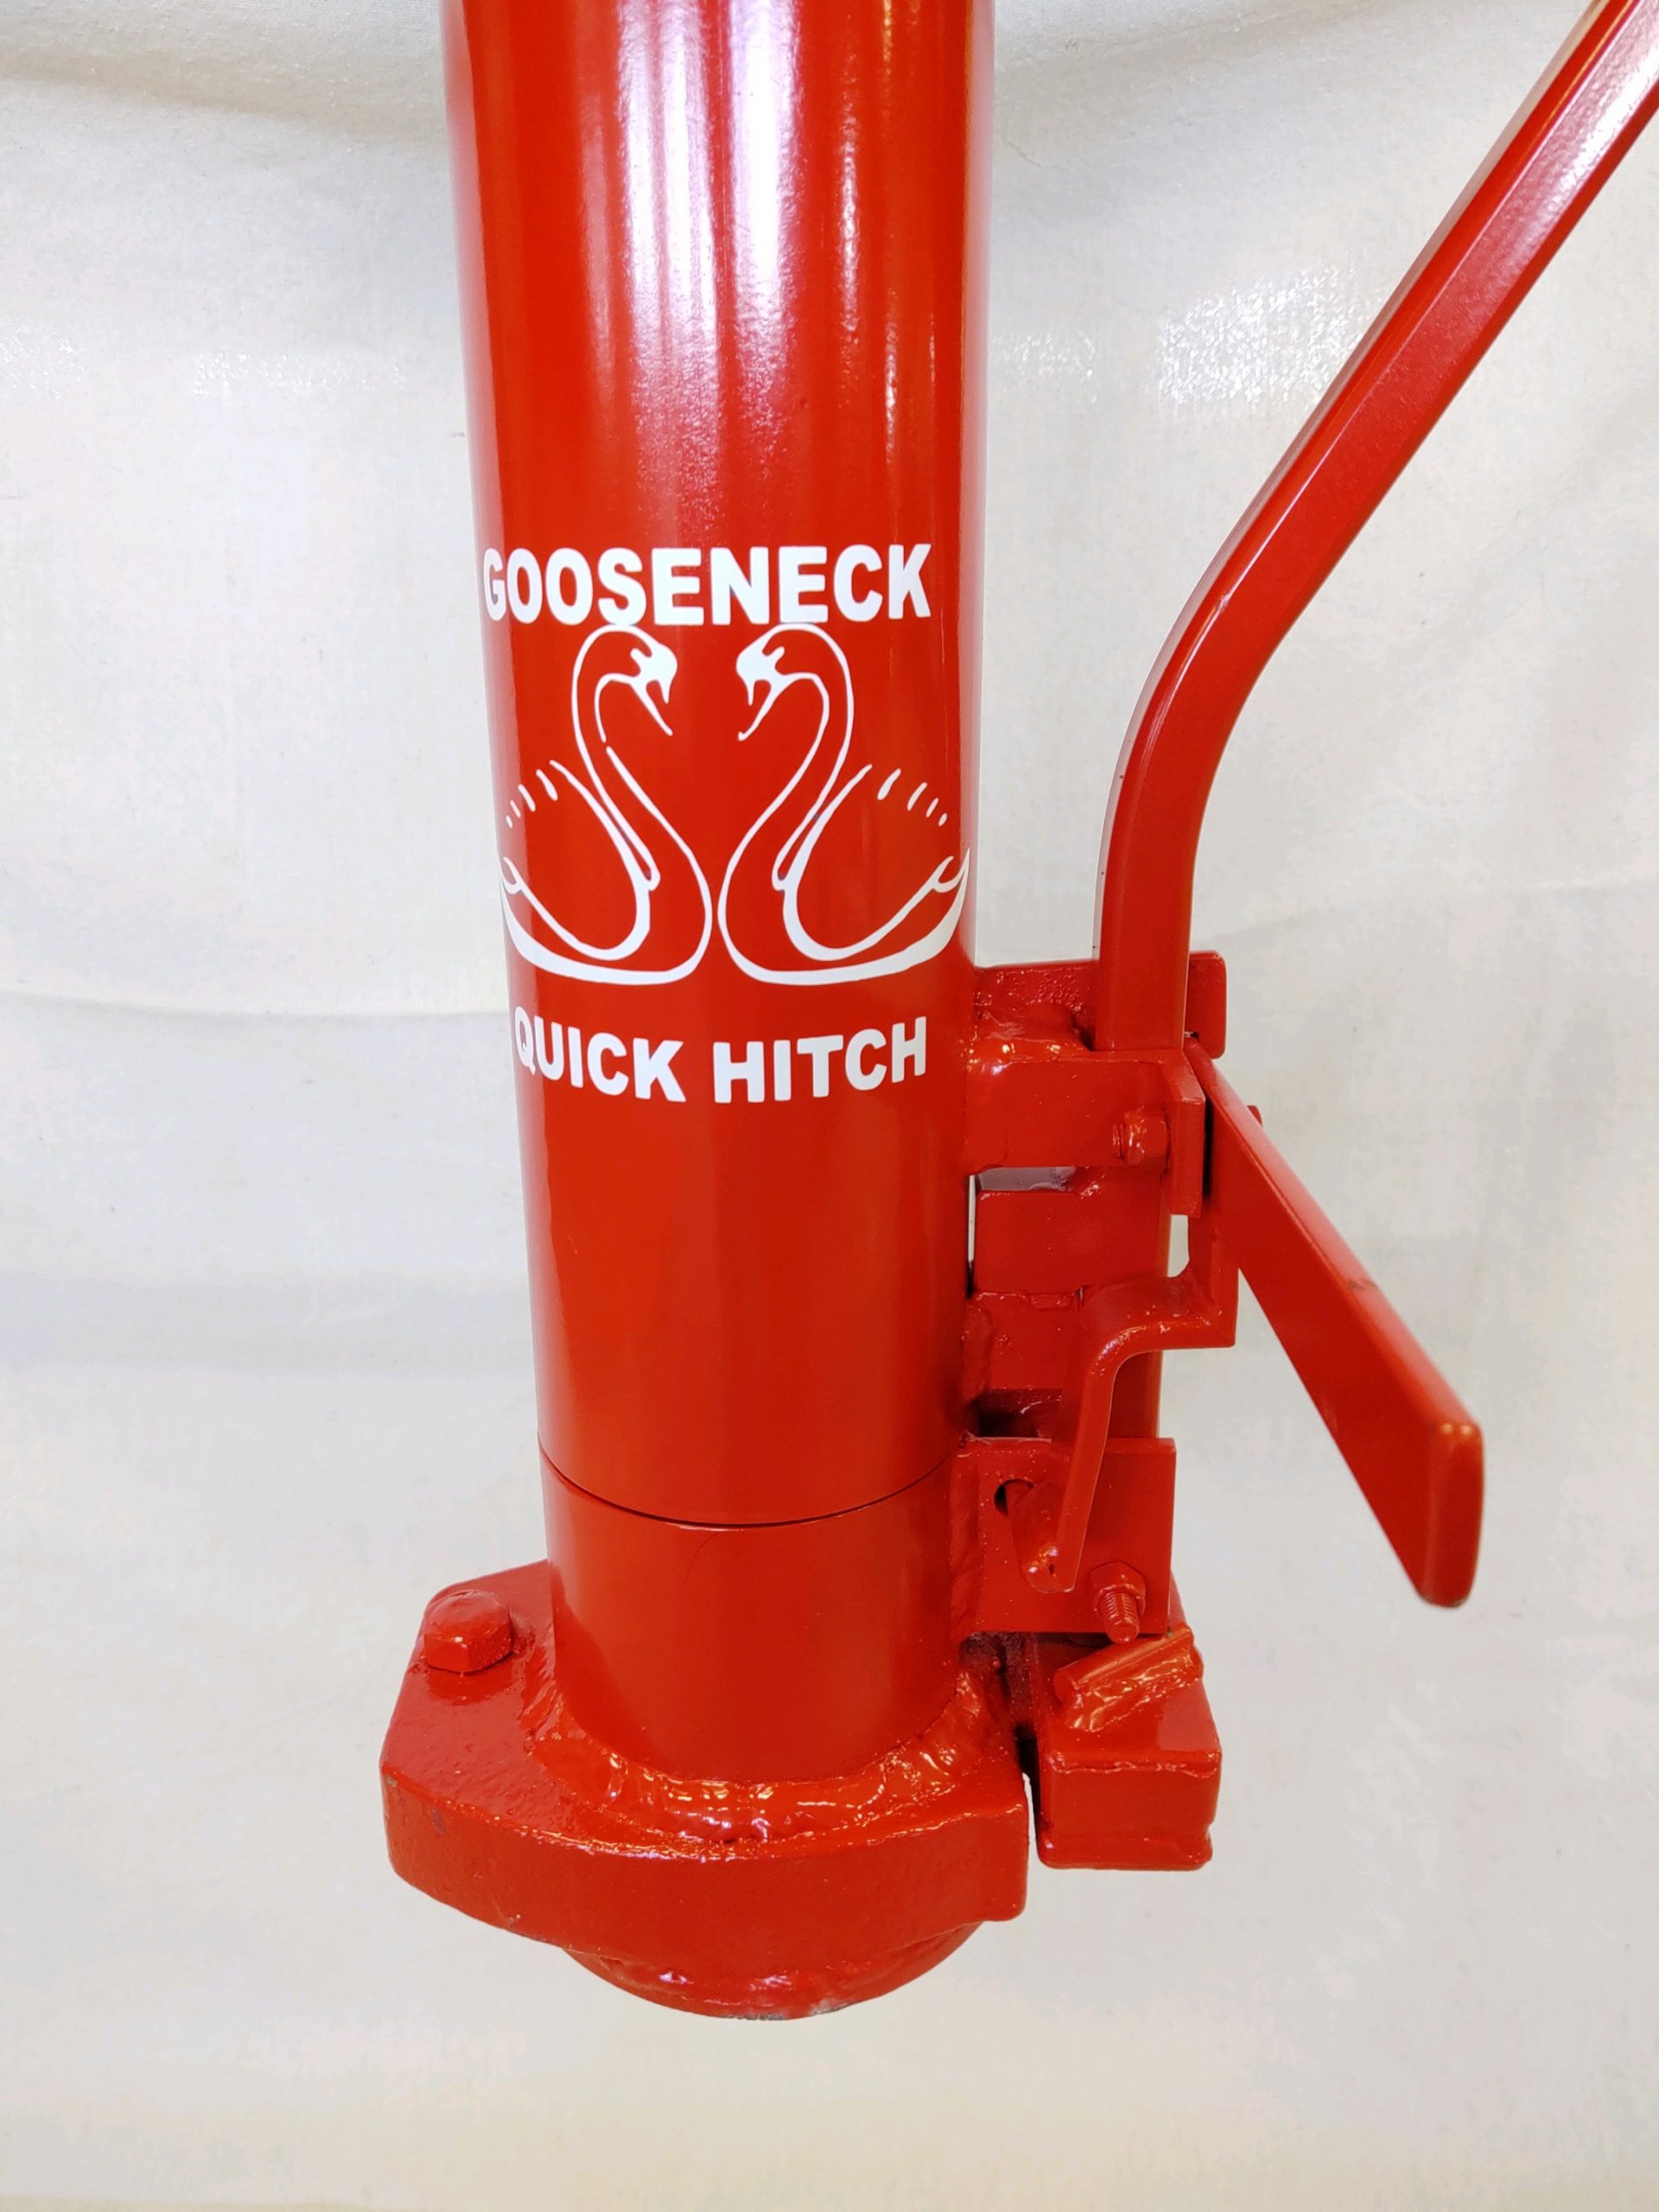 Gooseneck Quick Hitch